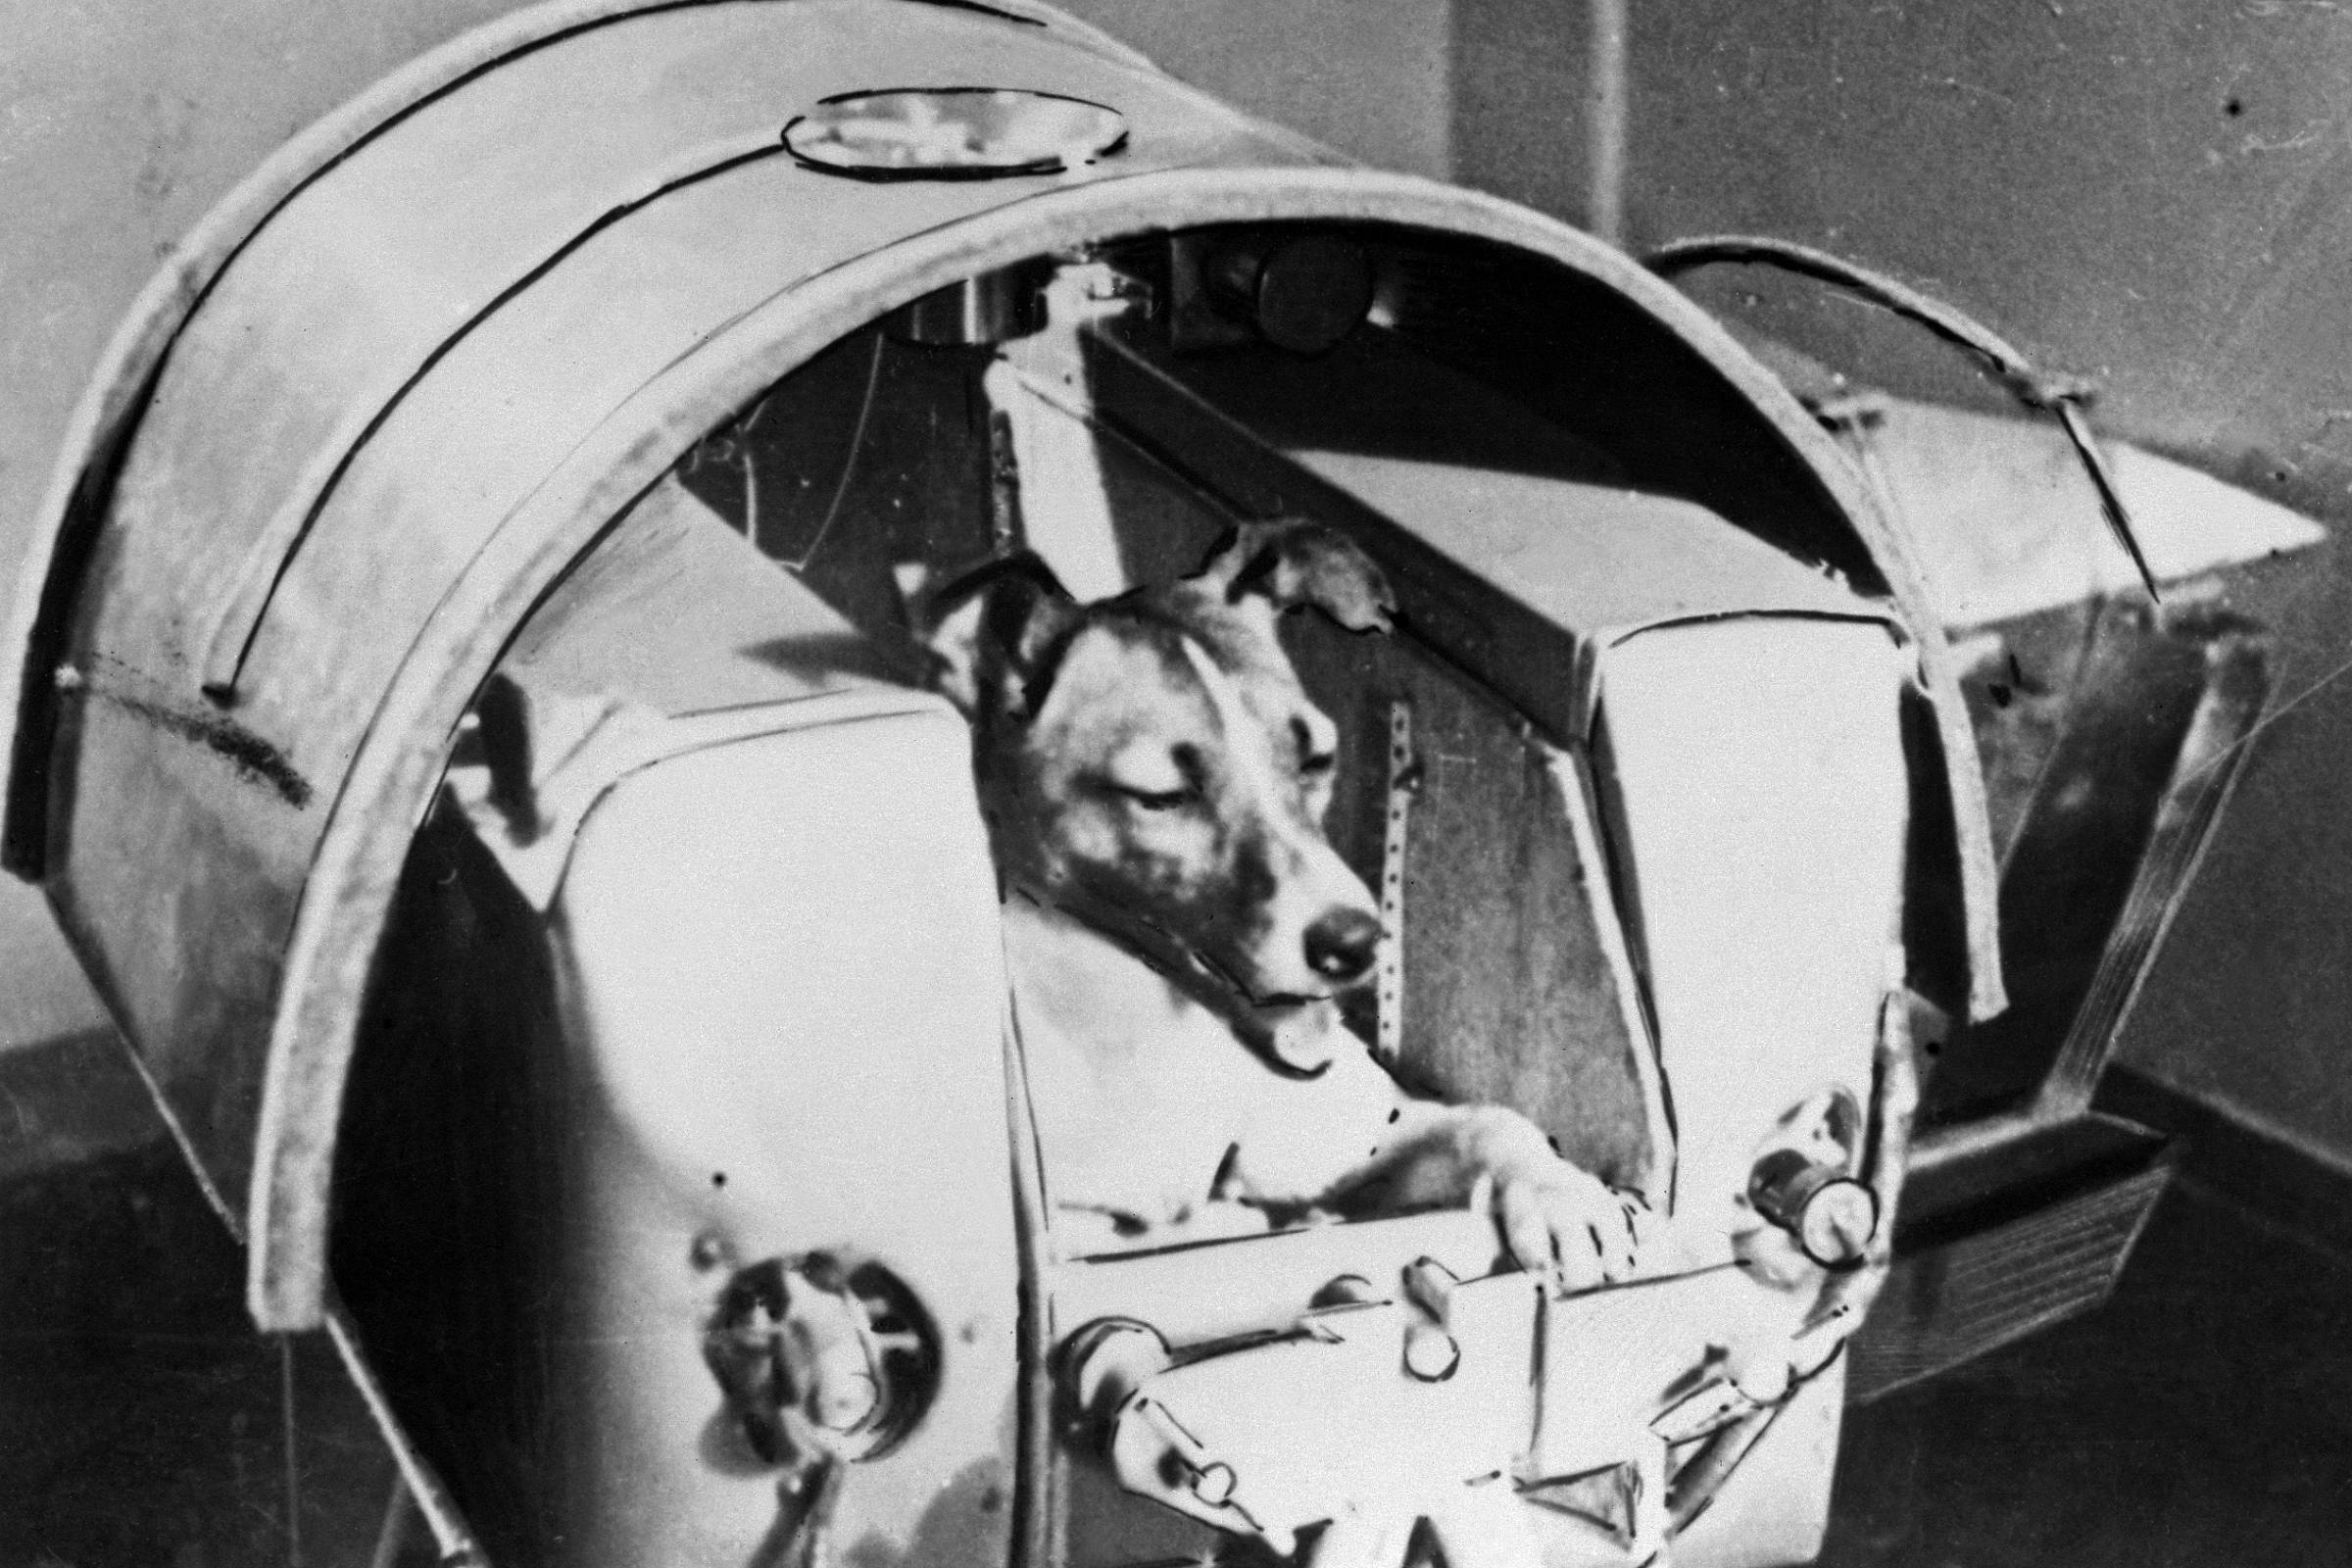 Кличка первой собаки полетевшей в космос